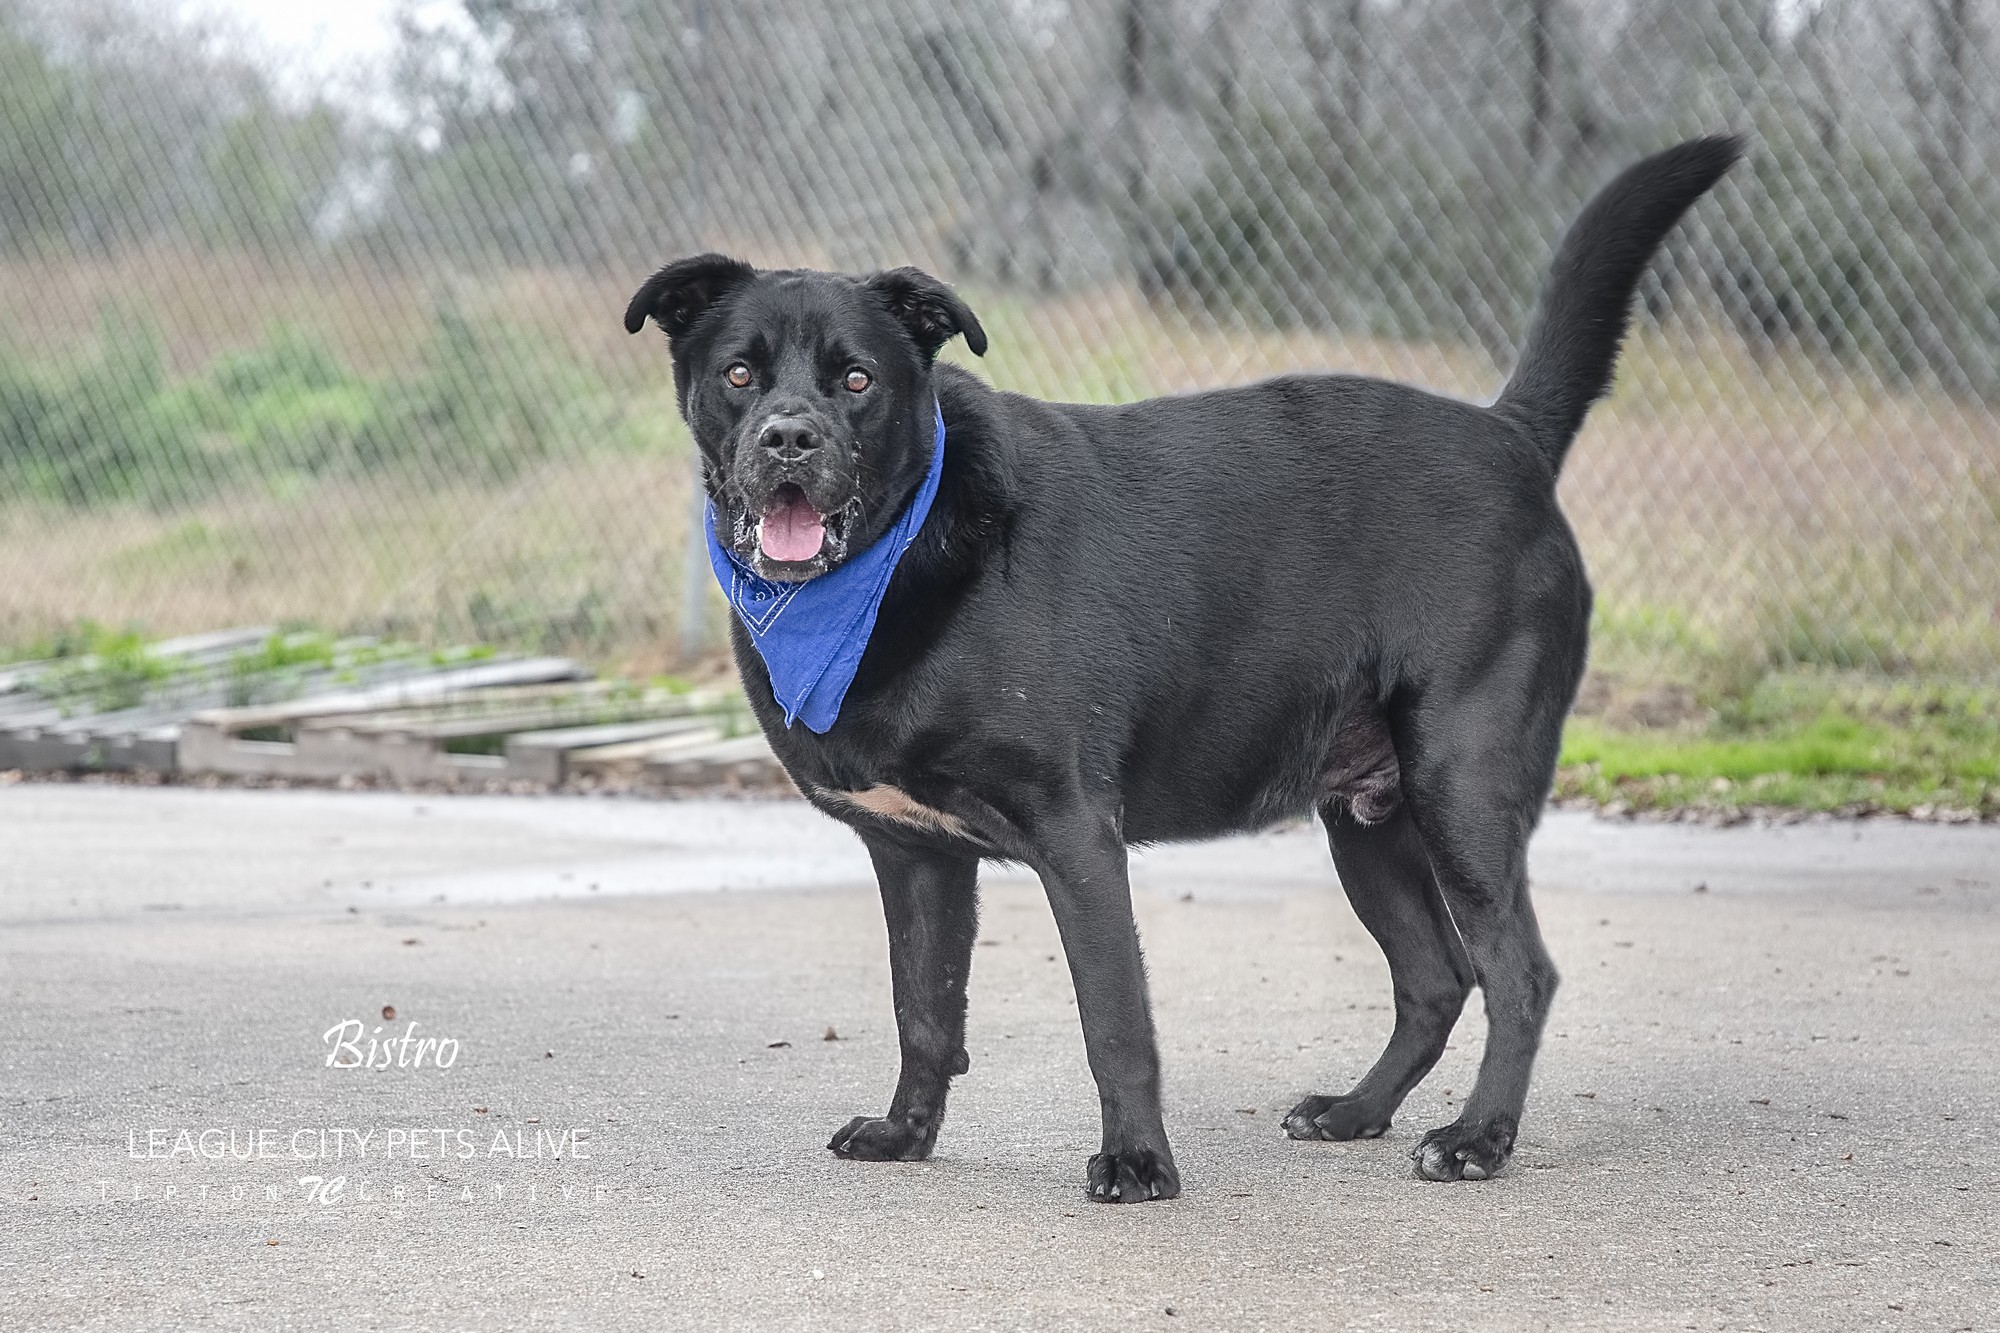 Bistro, an adoptable Labrador Retriever in League City, TX, 77573 | Photo Image 4